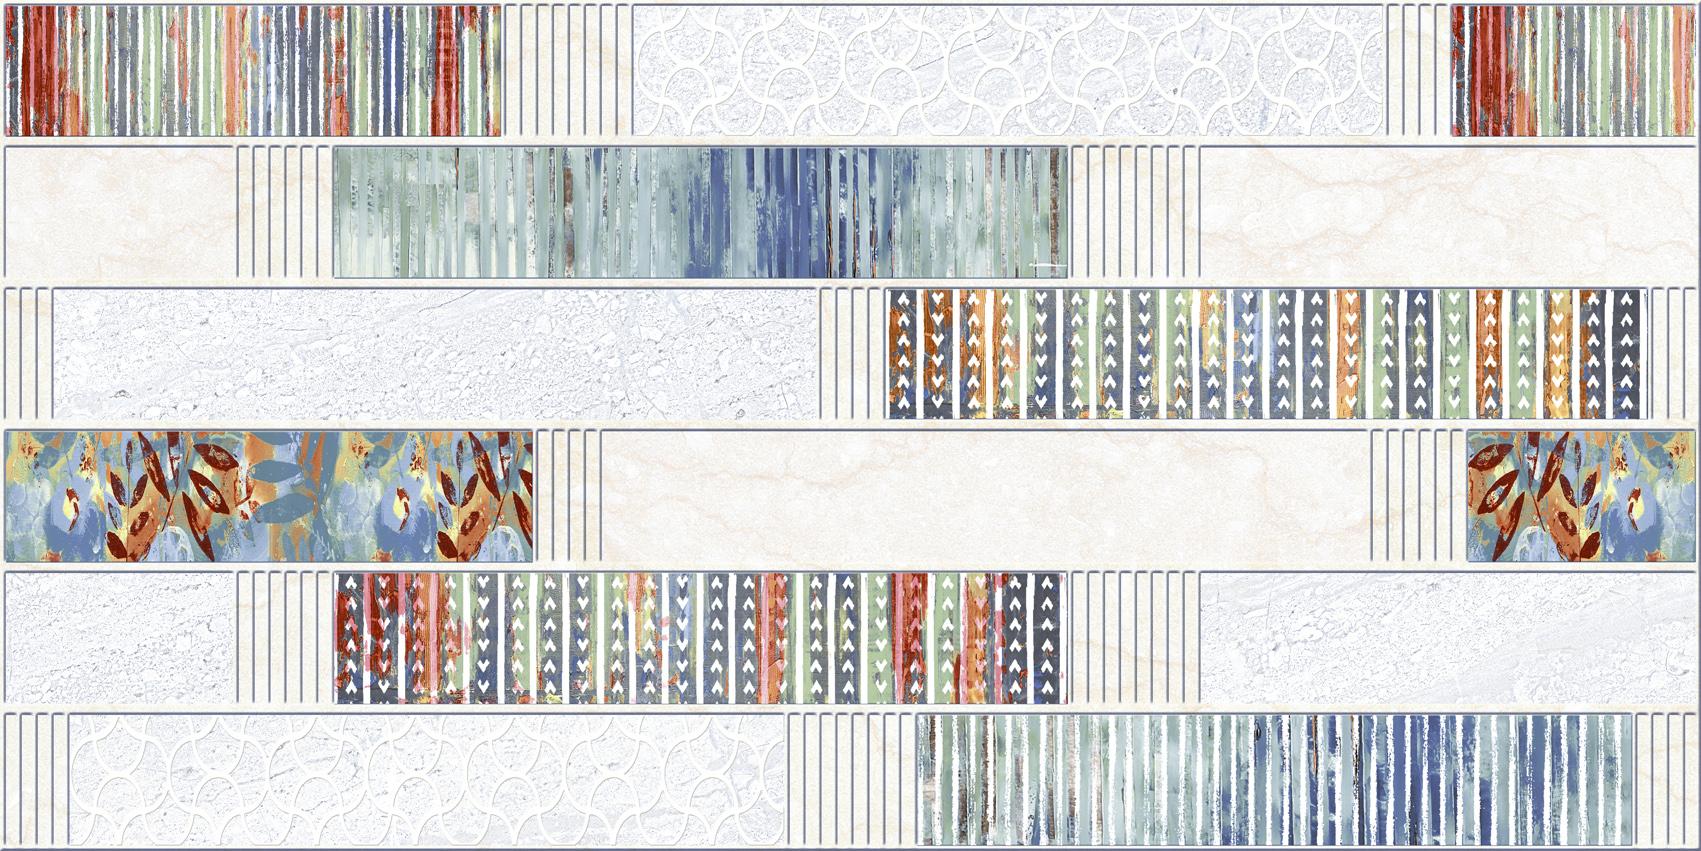 Digital Glazed Vitrified Tiles for Bathroom Tiles, Kitchen Tiles, Accent Tiles